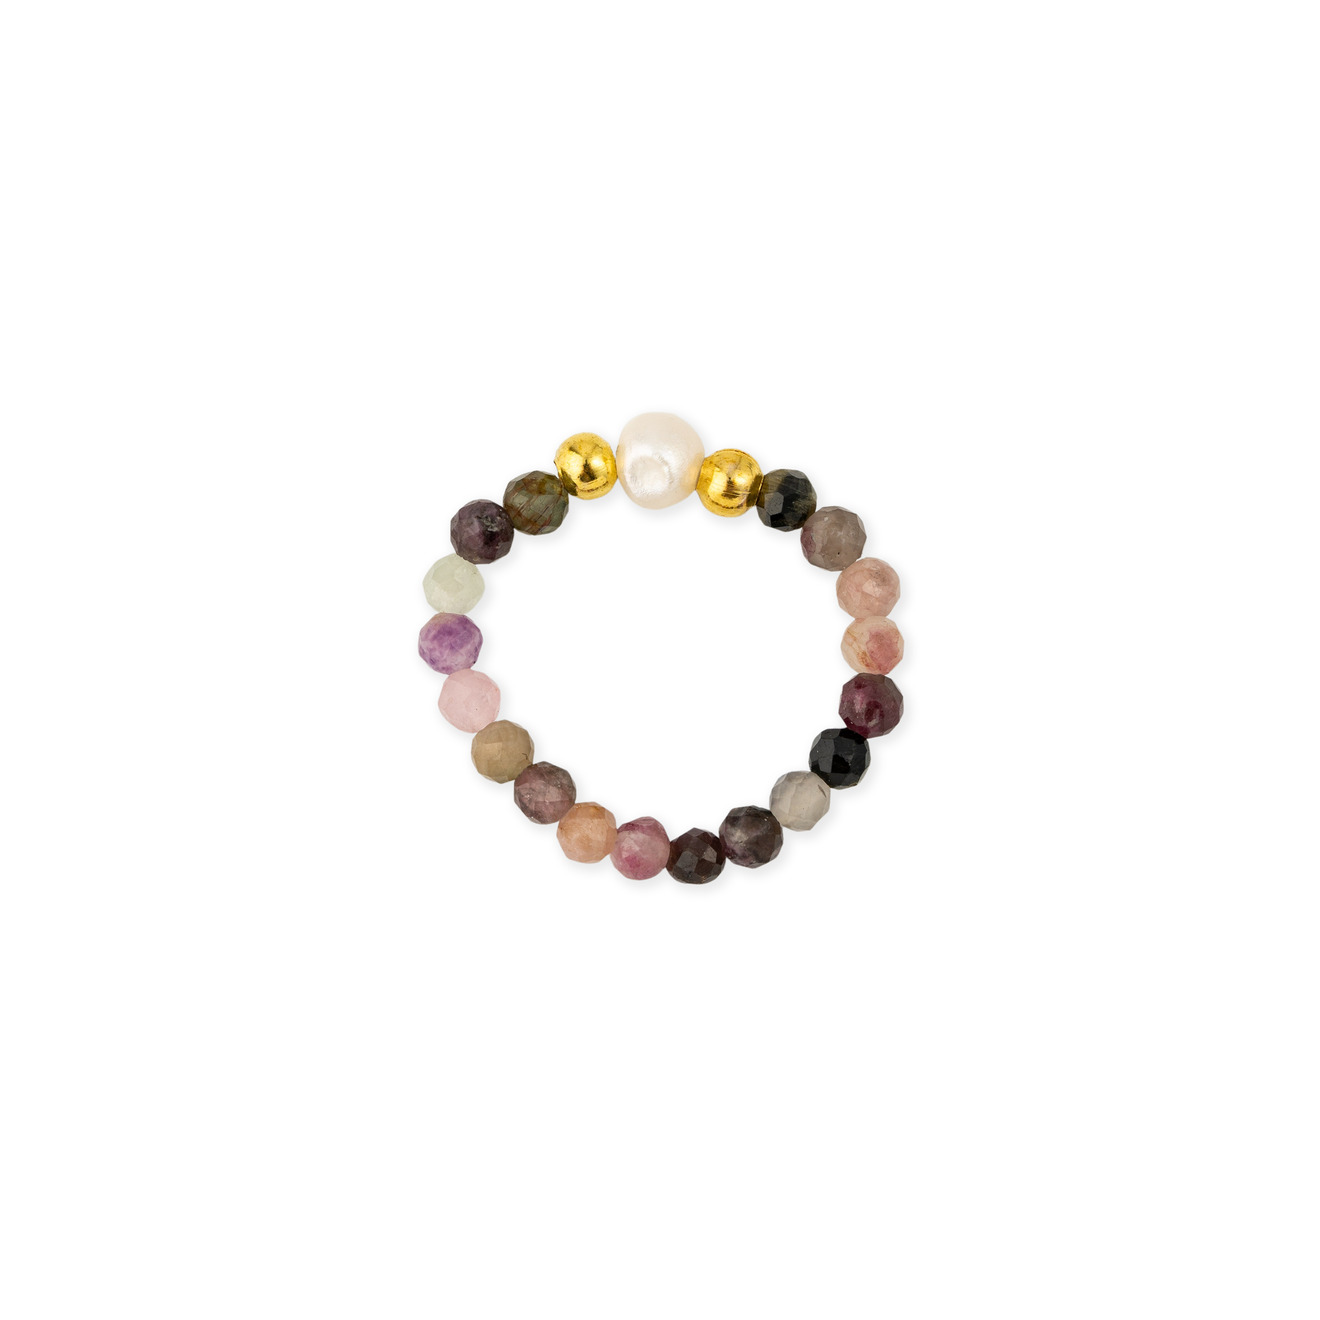 wisteria gems позолоченые серьги из двух квадратных камней лимонного и розового кварца Wisteria Gems Кольцо из натуральных камней